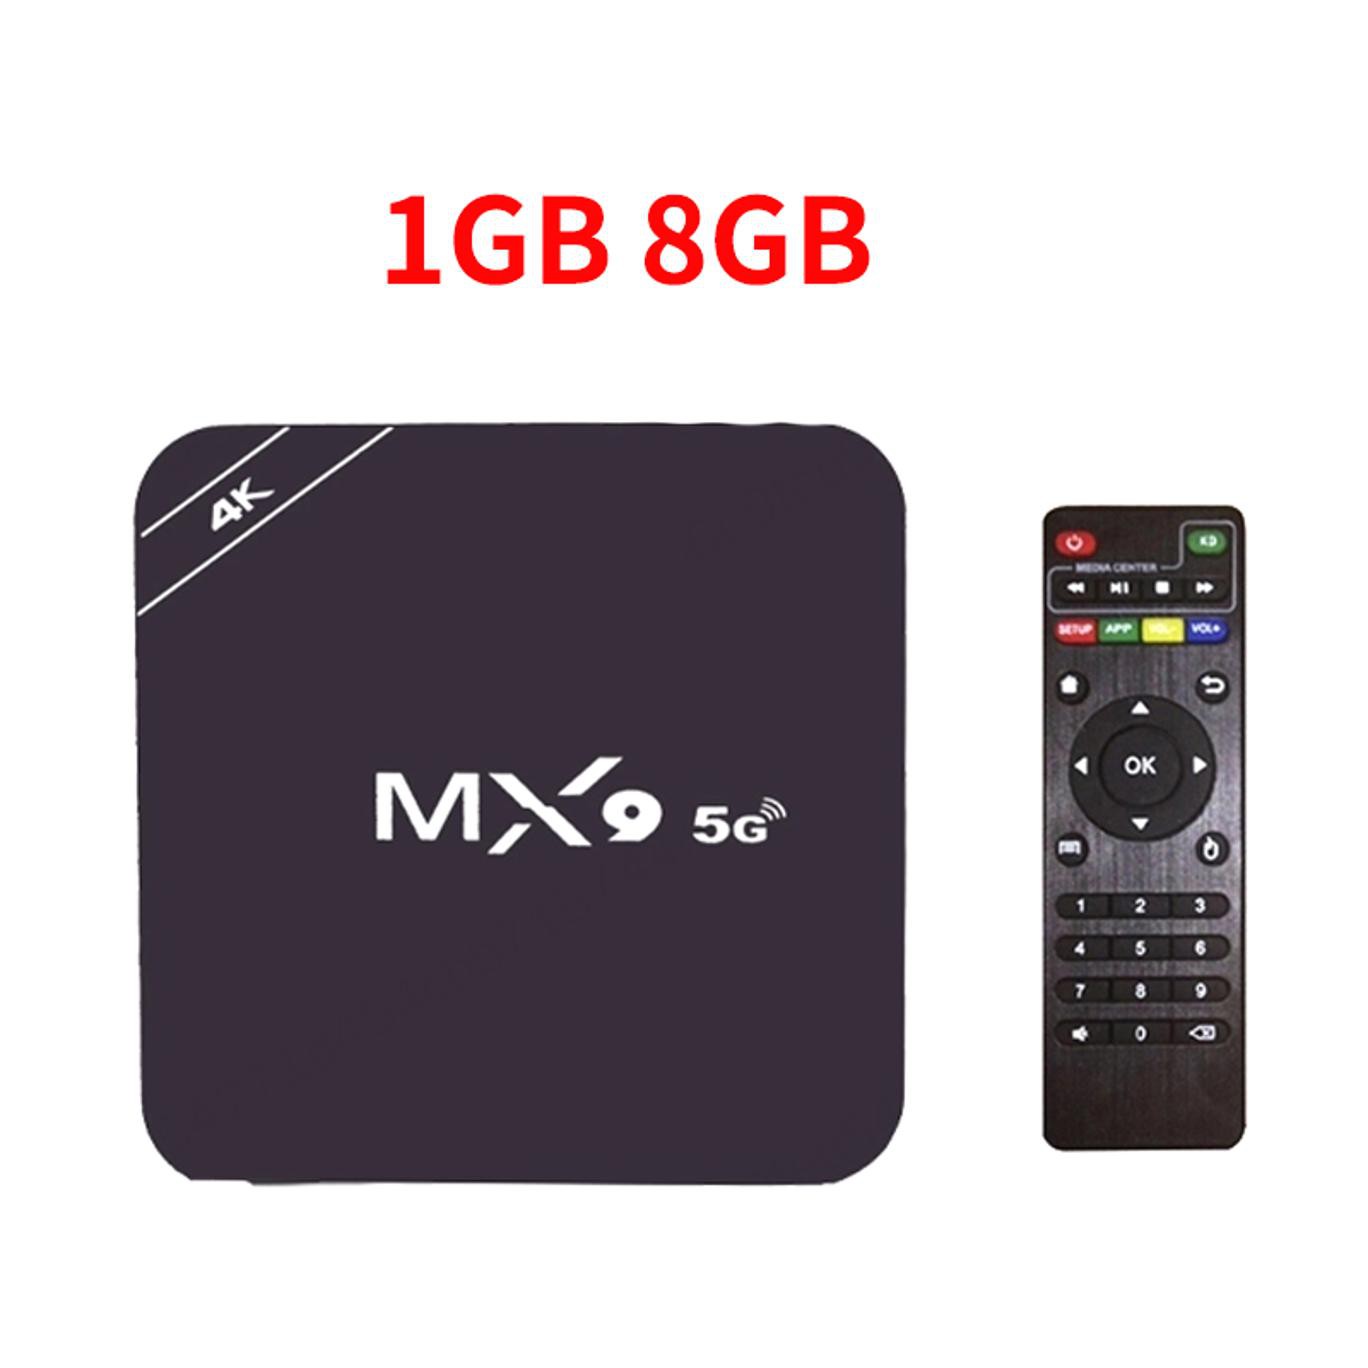 Đầu Tv Box Mx9, Android 4,4, 4k, Quad Core, 1gb Ram, 8gb Rom, 2,0 Hd, Hdmi, Sds, Slot, Wi-Fi 2.4ghz